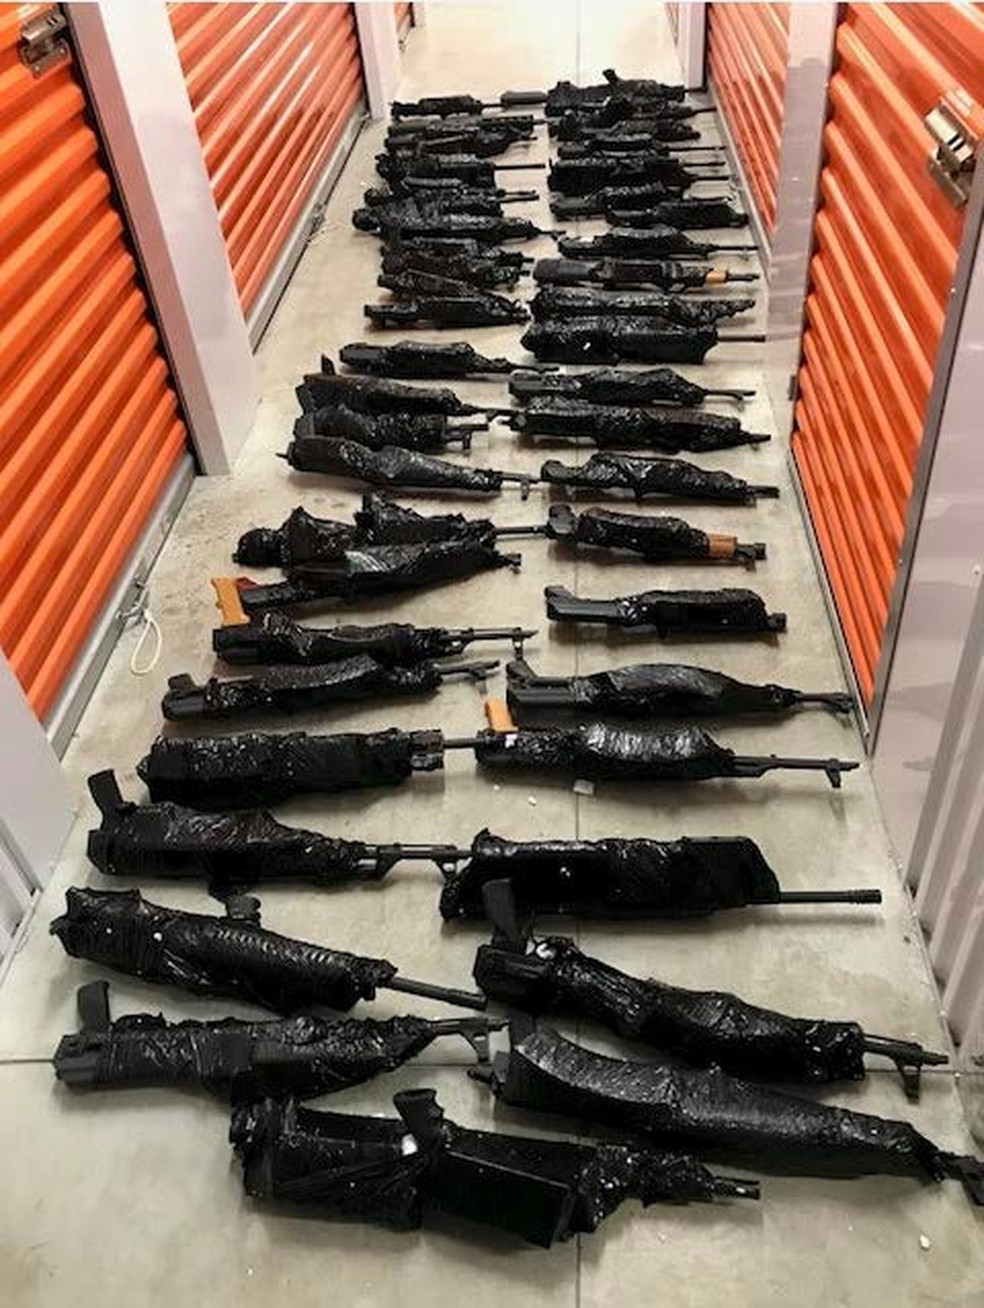 Armas foram apreendidas em depósito (Foto: Divulgação)